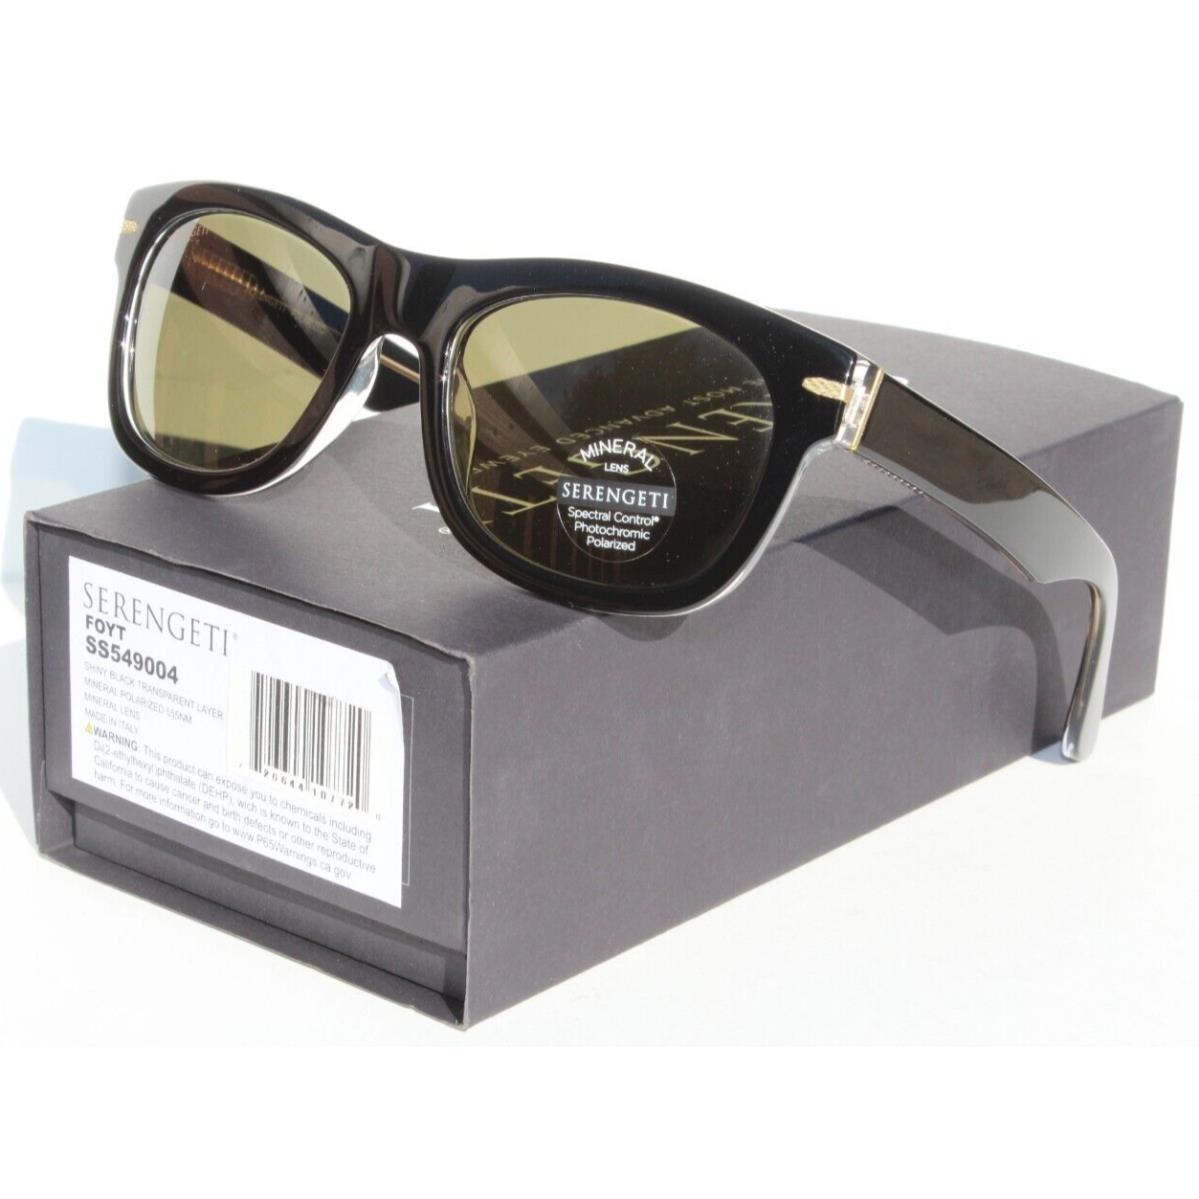 Serengeti Foyt Polarized Sunglasses Shiny Black/555nm Mineral SS549004 Italy